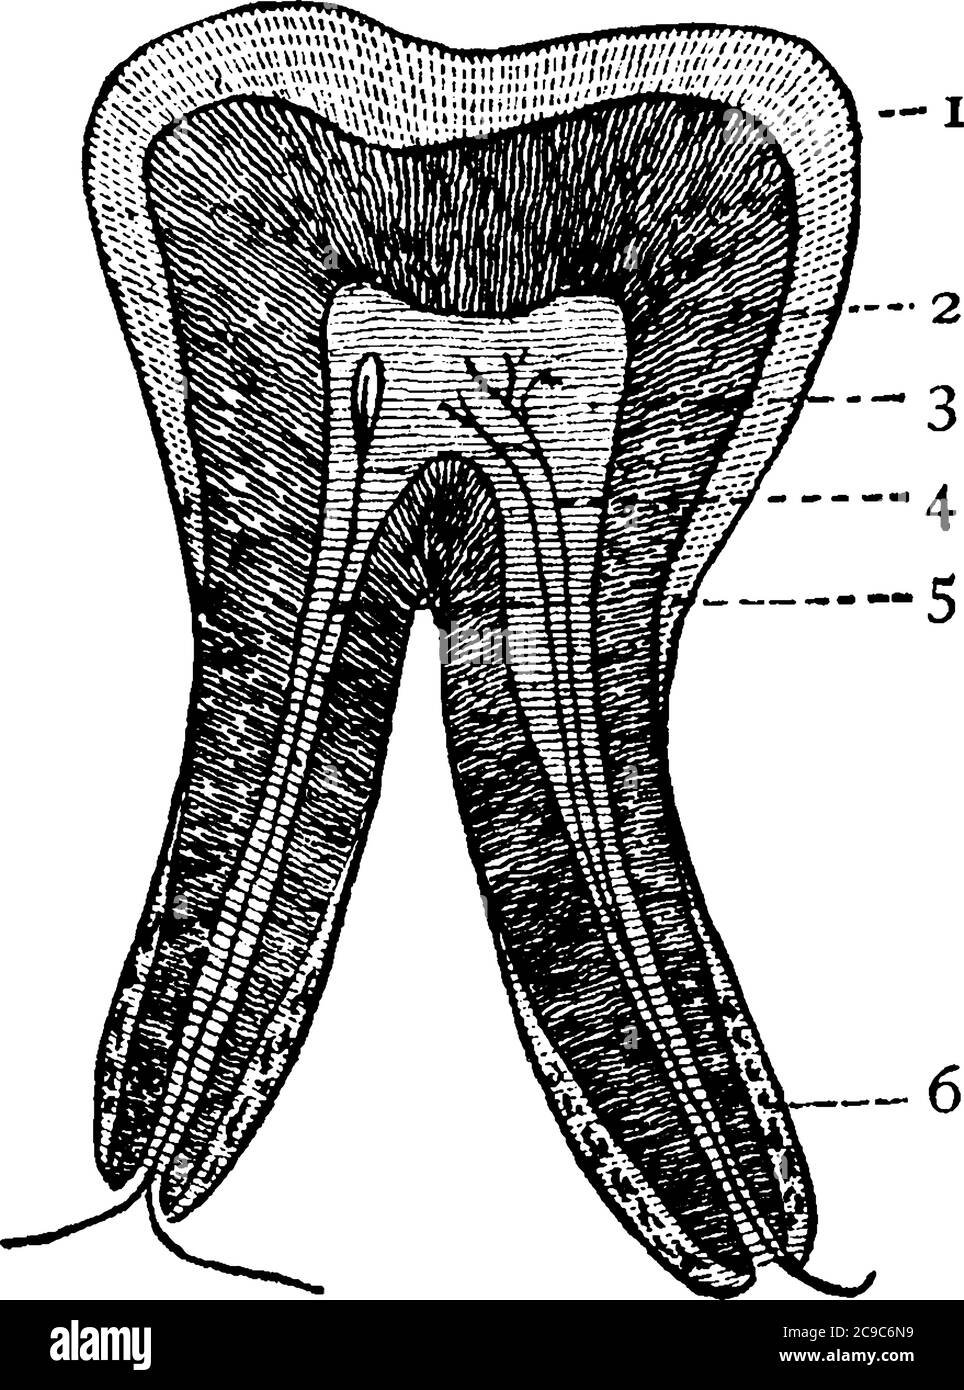 Eine typische Darstellung des vertikalen Zahnabschnittes, mit Teilen, die 1: Zahnschmelz; 2: Dentin; 3: Zellstoff; 4: Blutgefäß; 5: Nerv und 6: Fibr Stock Vektor